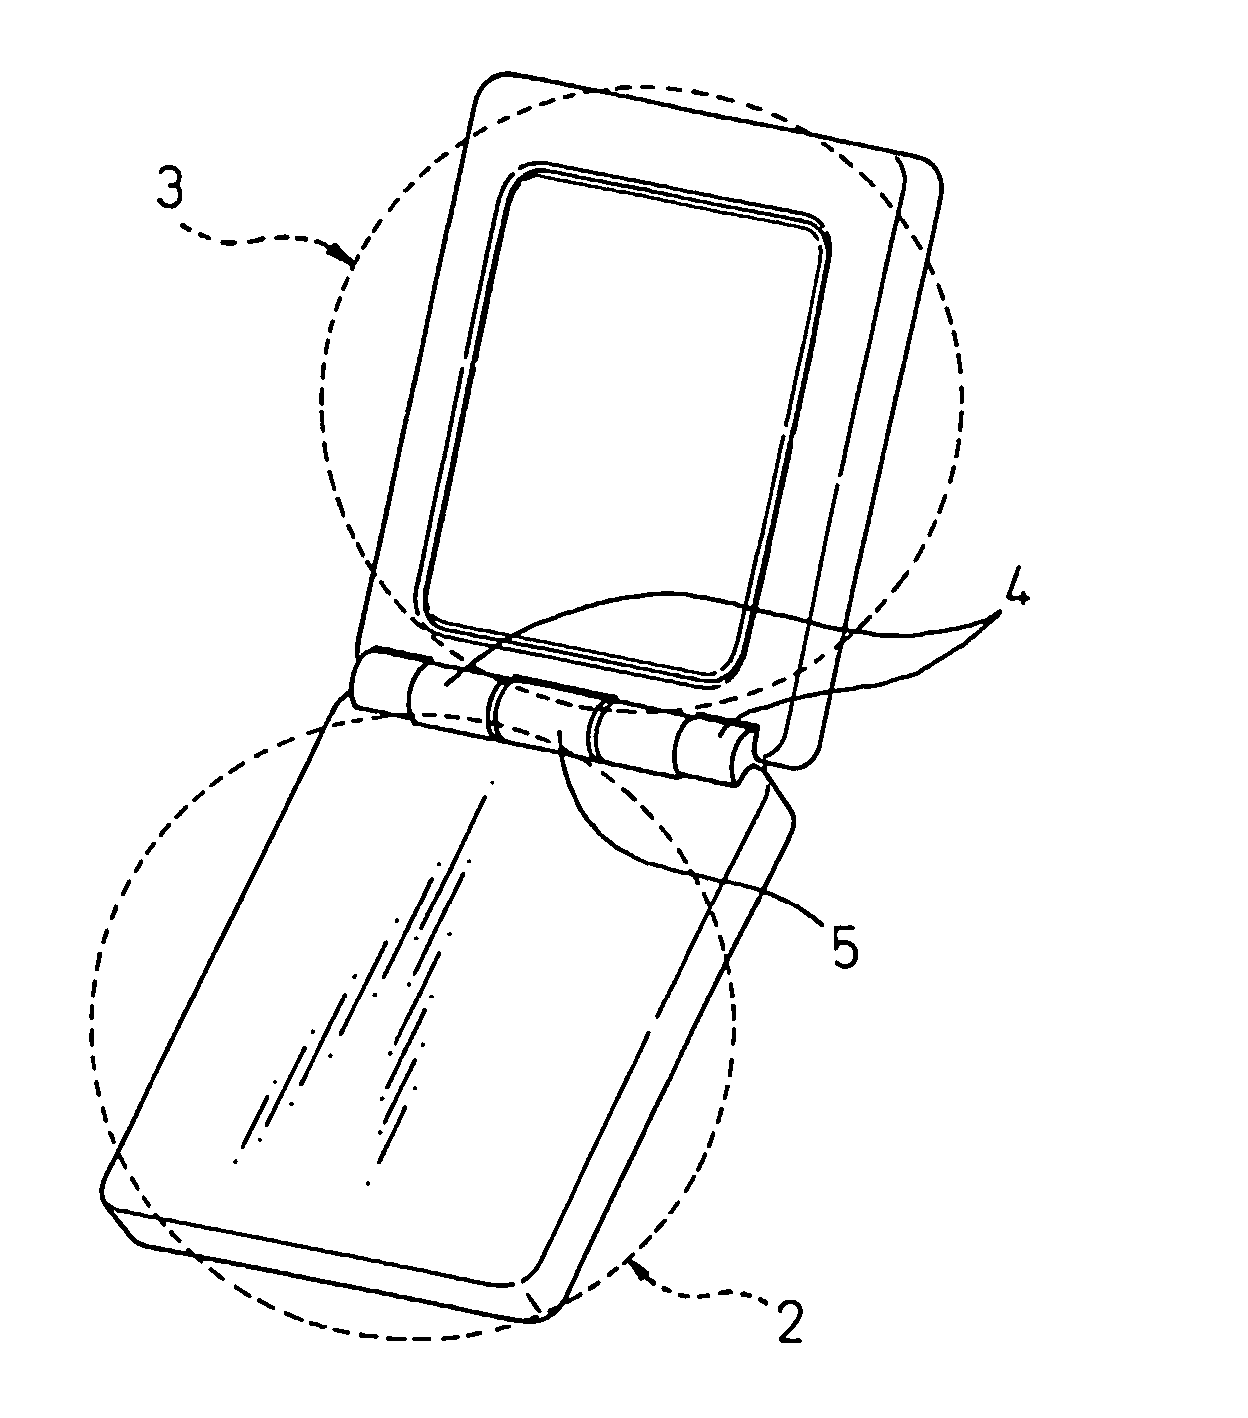 Folding type electronic device